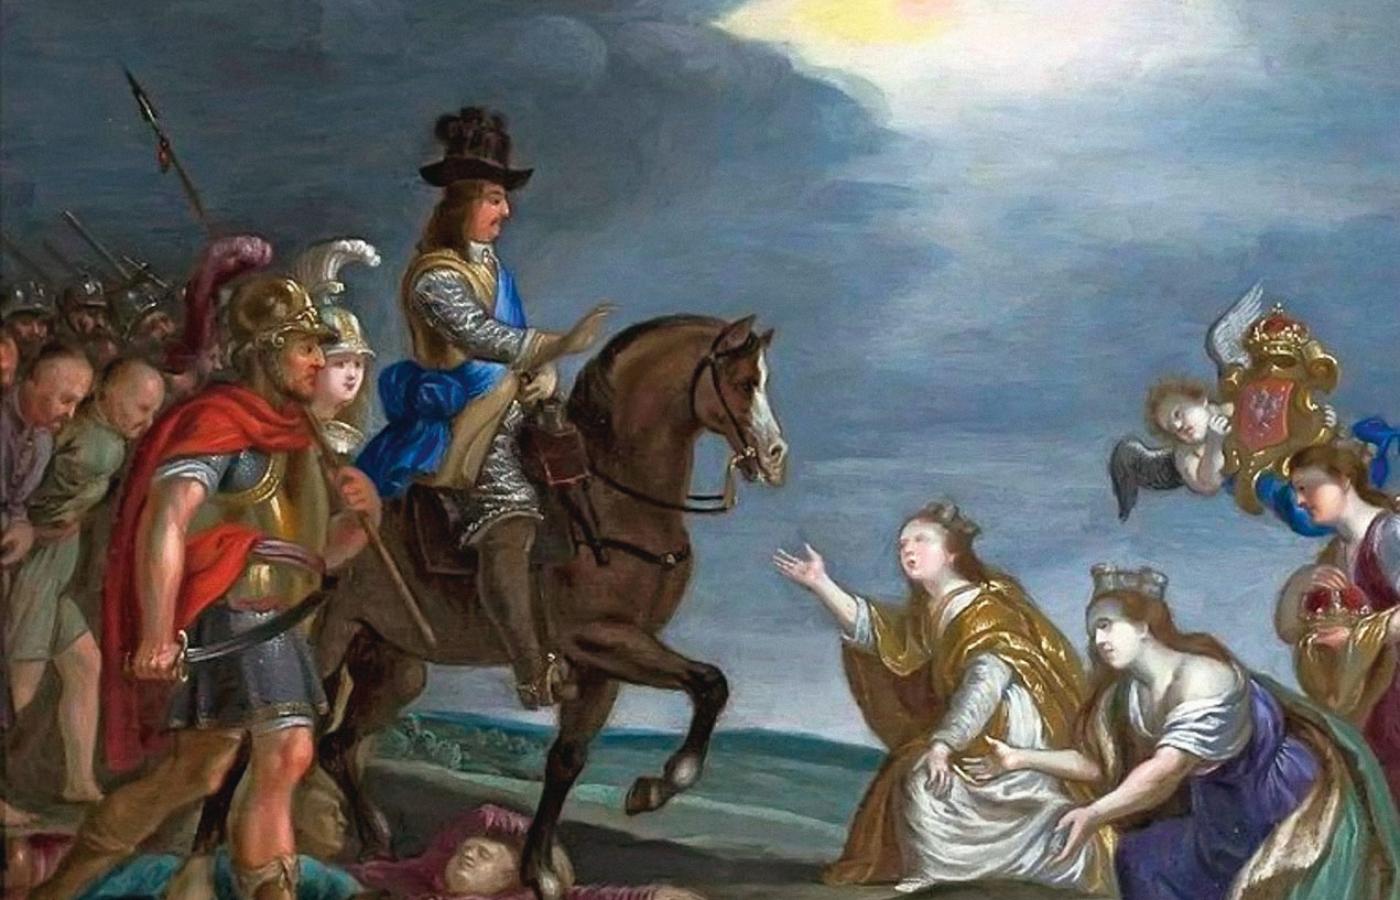 Triumf Karola X nad Rzeczpospolitą, obraz z epoki, malarz nieznany.